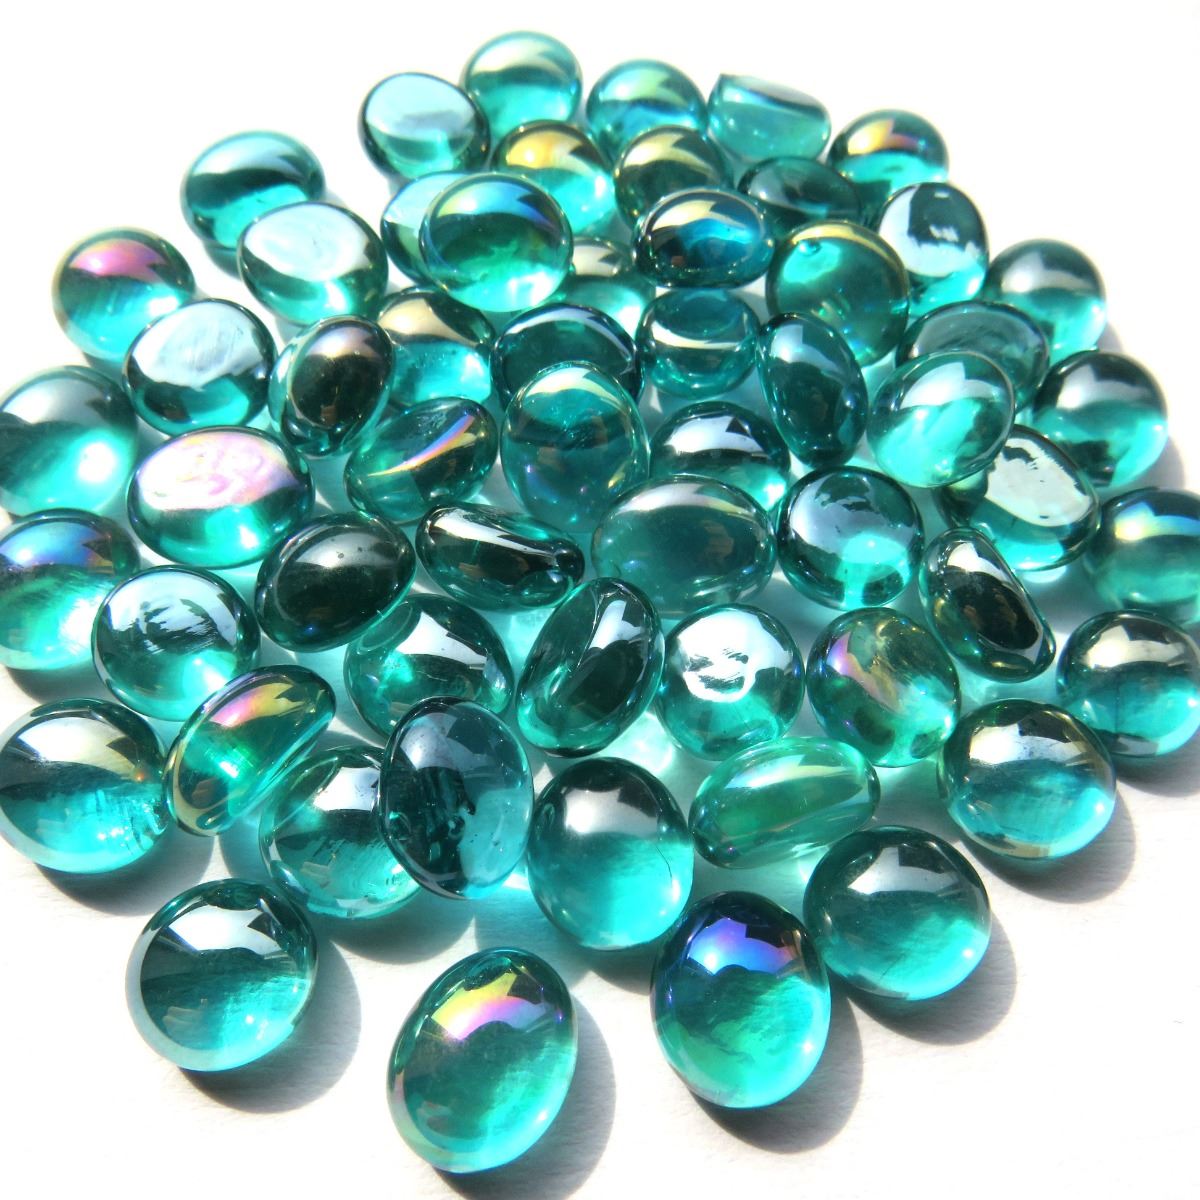 Mini Gems - Teal Diamond